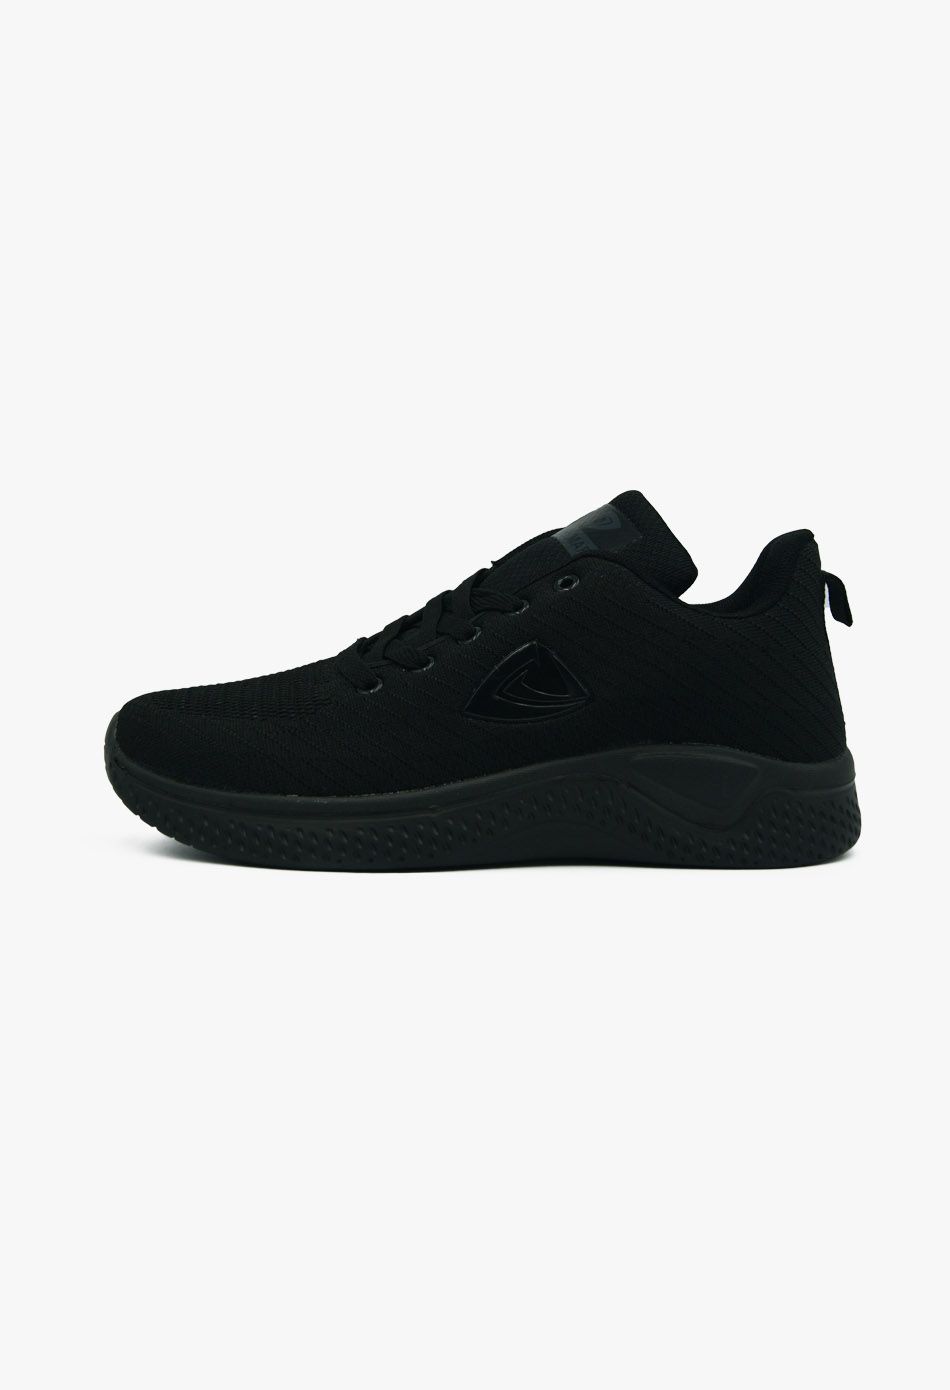 Γυναικεία Sneakers Μαύρο / 152B-black Γυναικεία Αθλητικά και Sneakers joya.gr